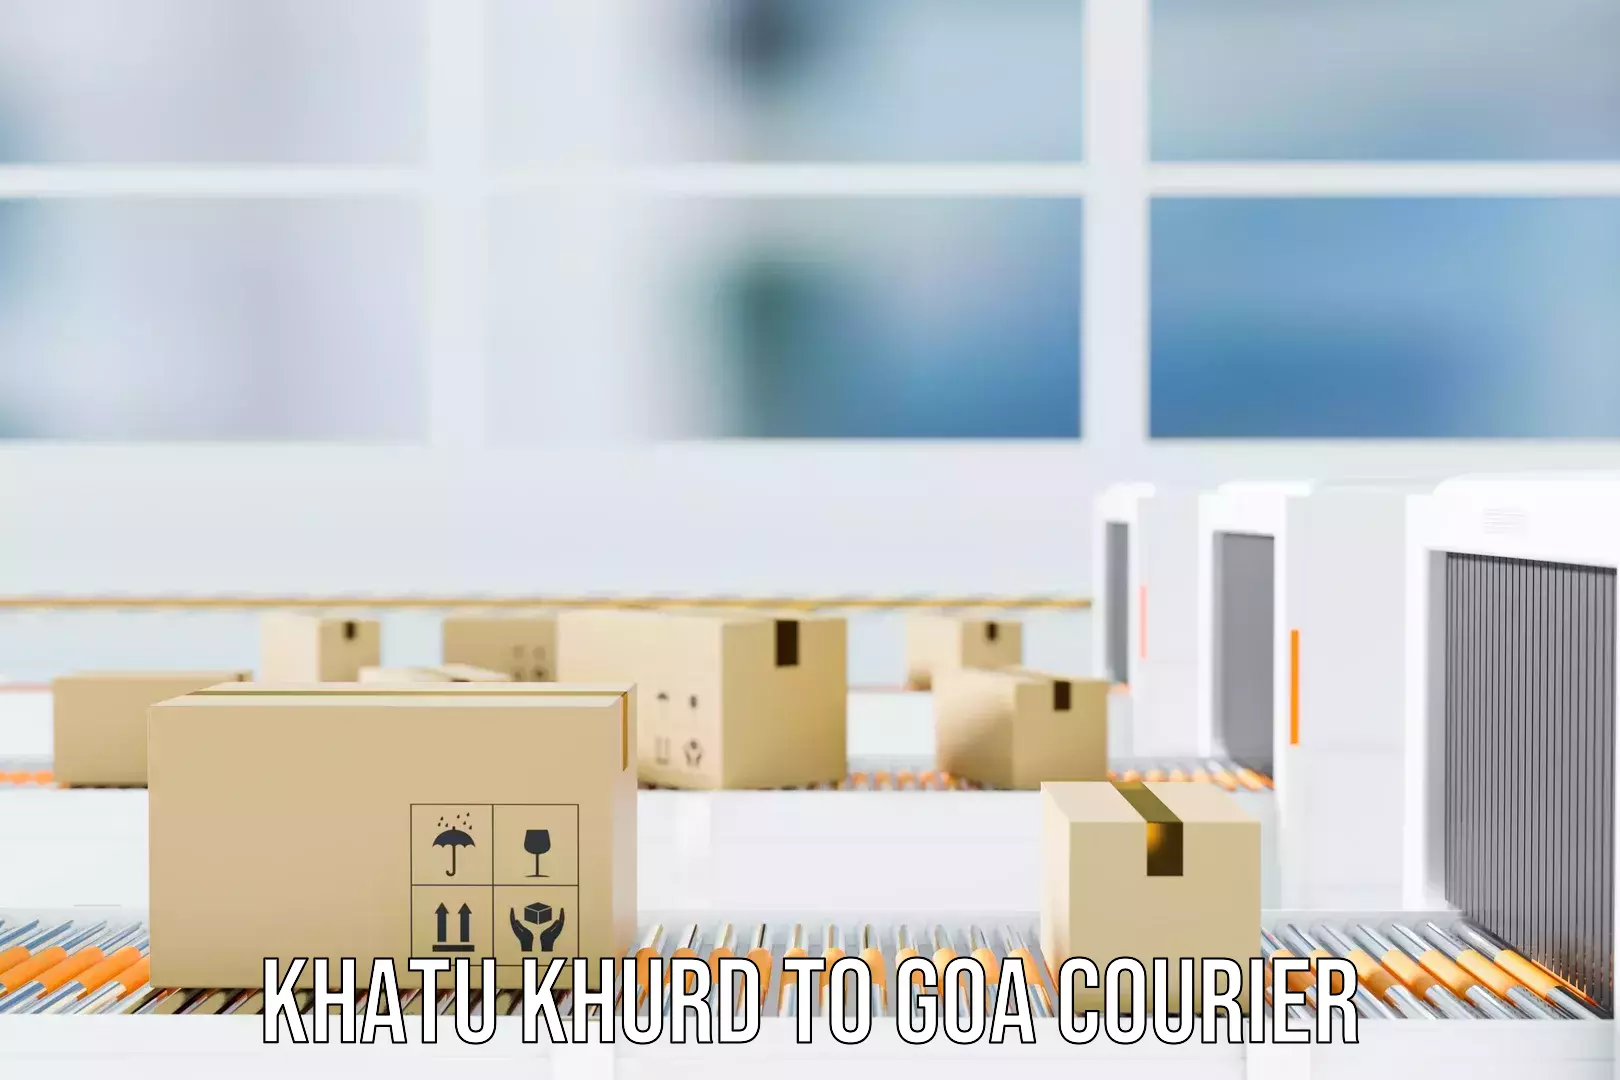 Online luggage shipping booking Khatu Khurd to Goa University